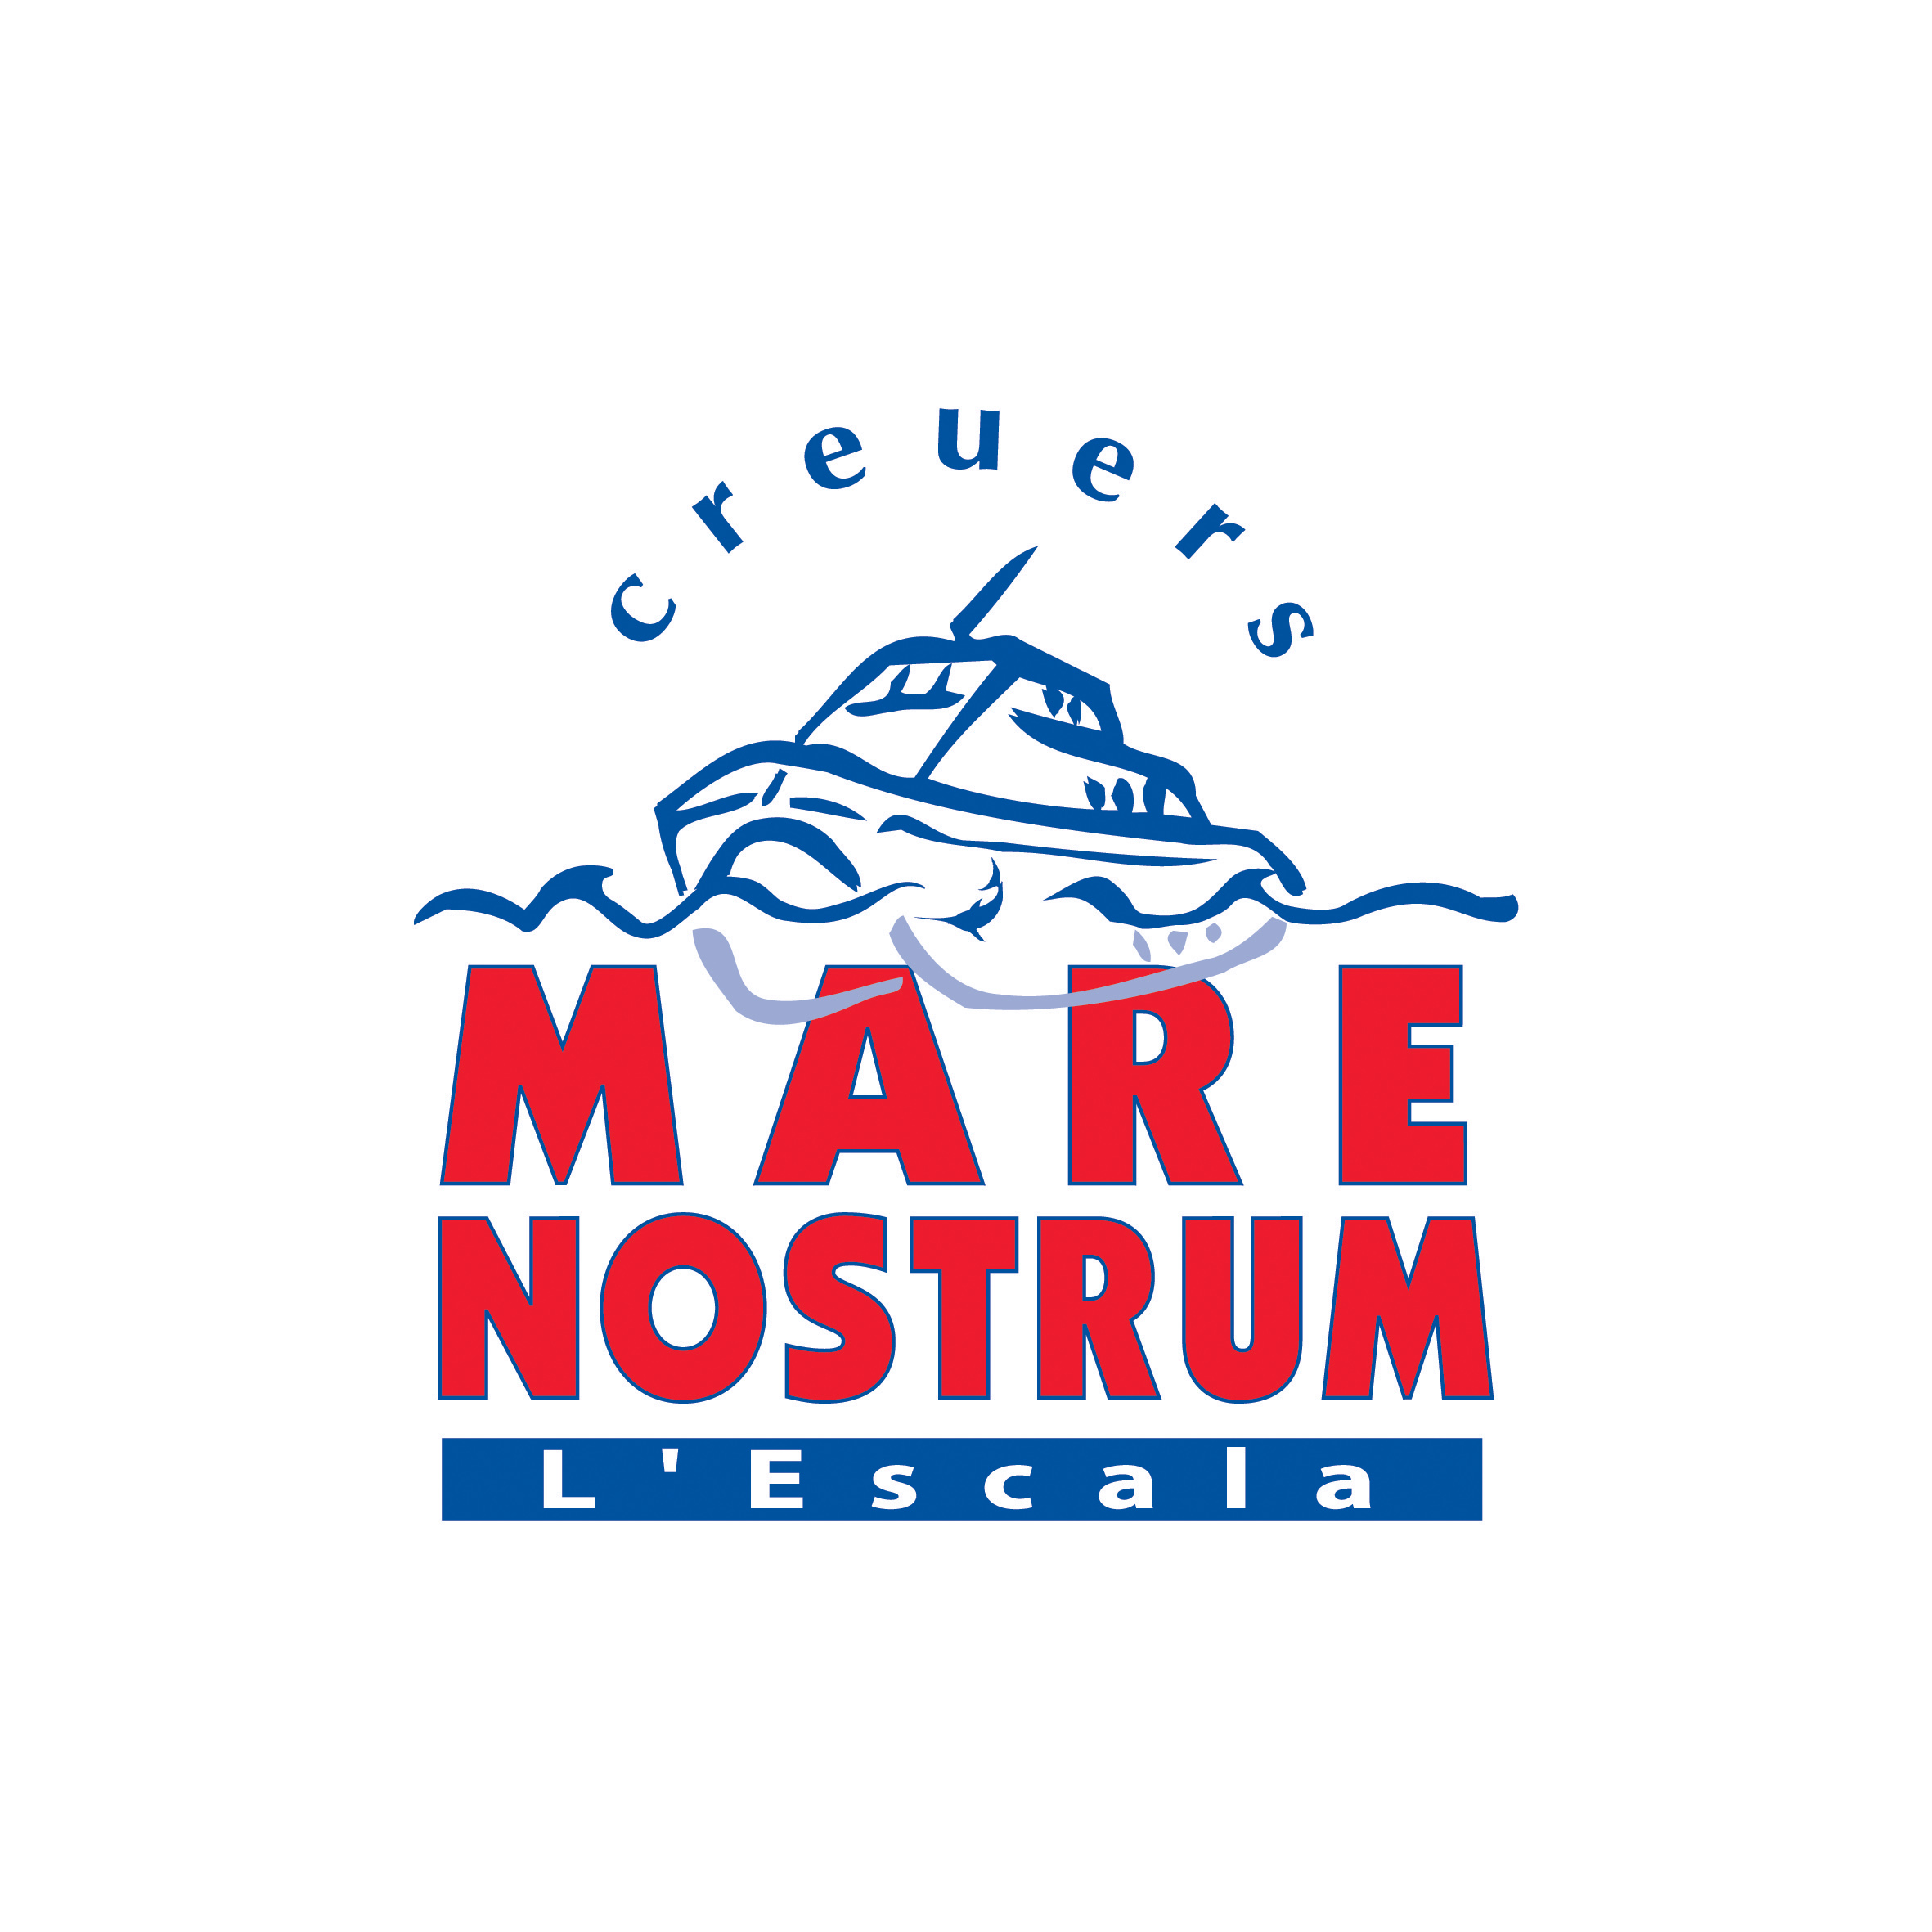 Logo - Creuers Mare Nostrum - Actividades Nauticas - Lescala - Empordaturisme